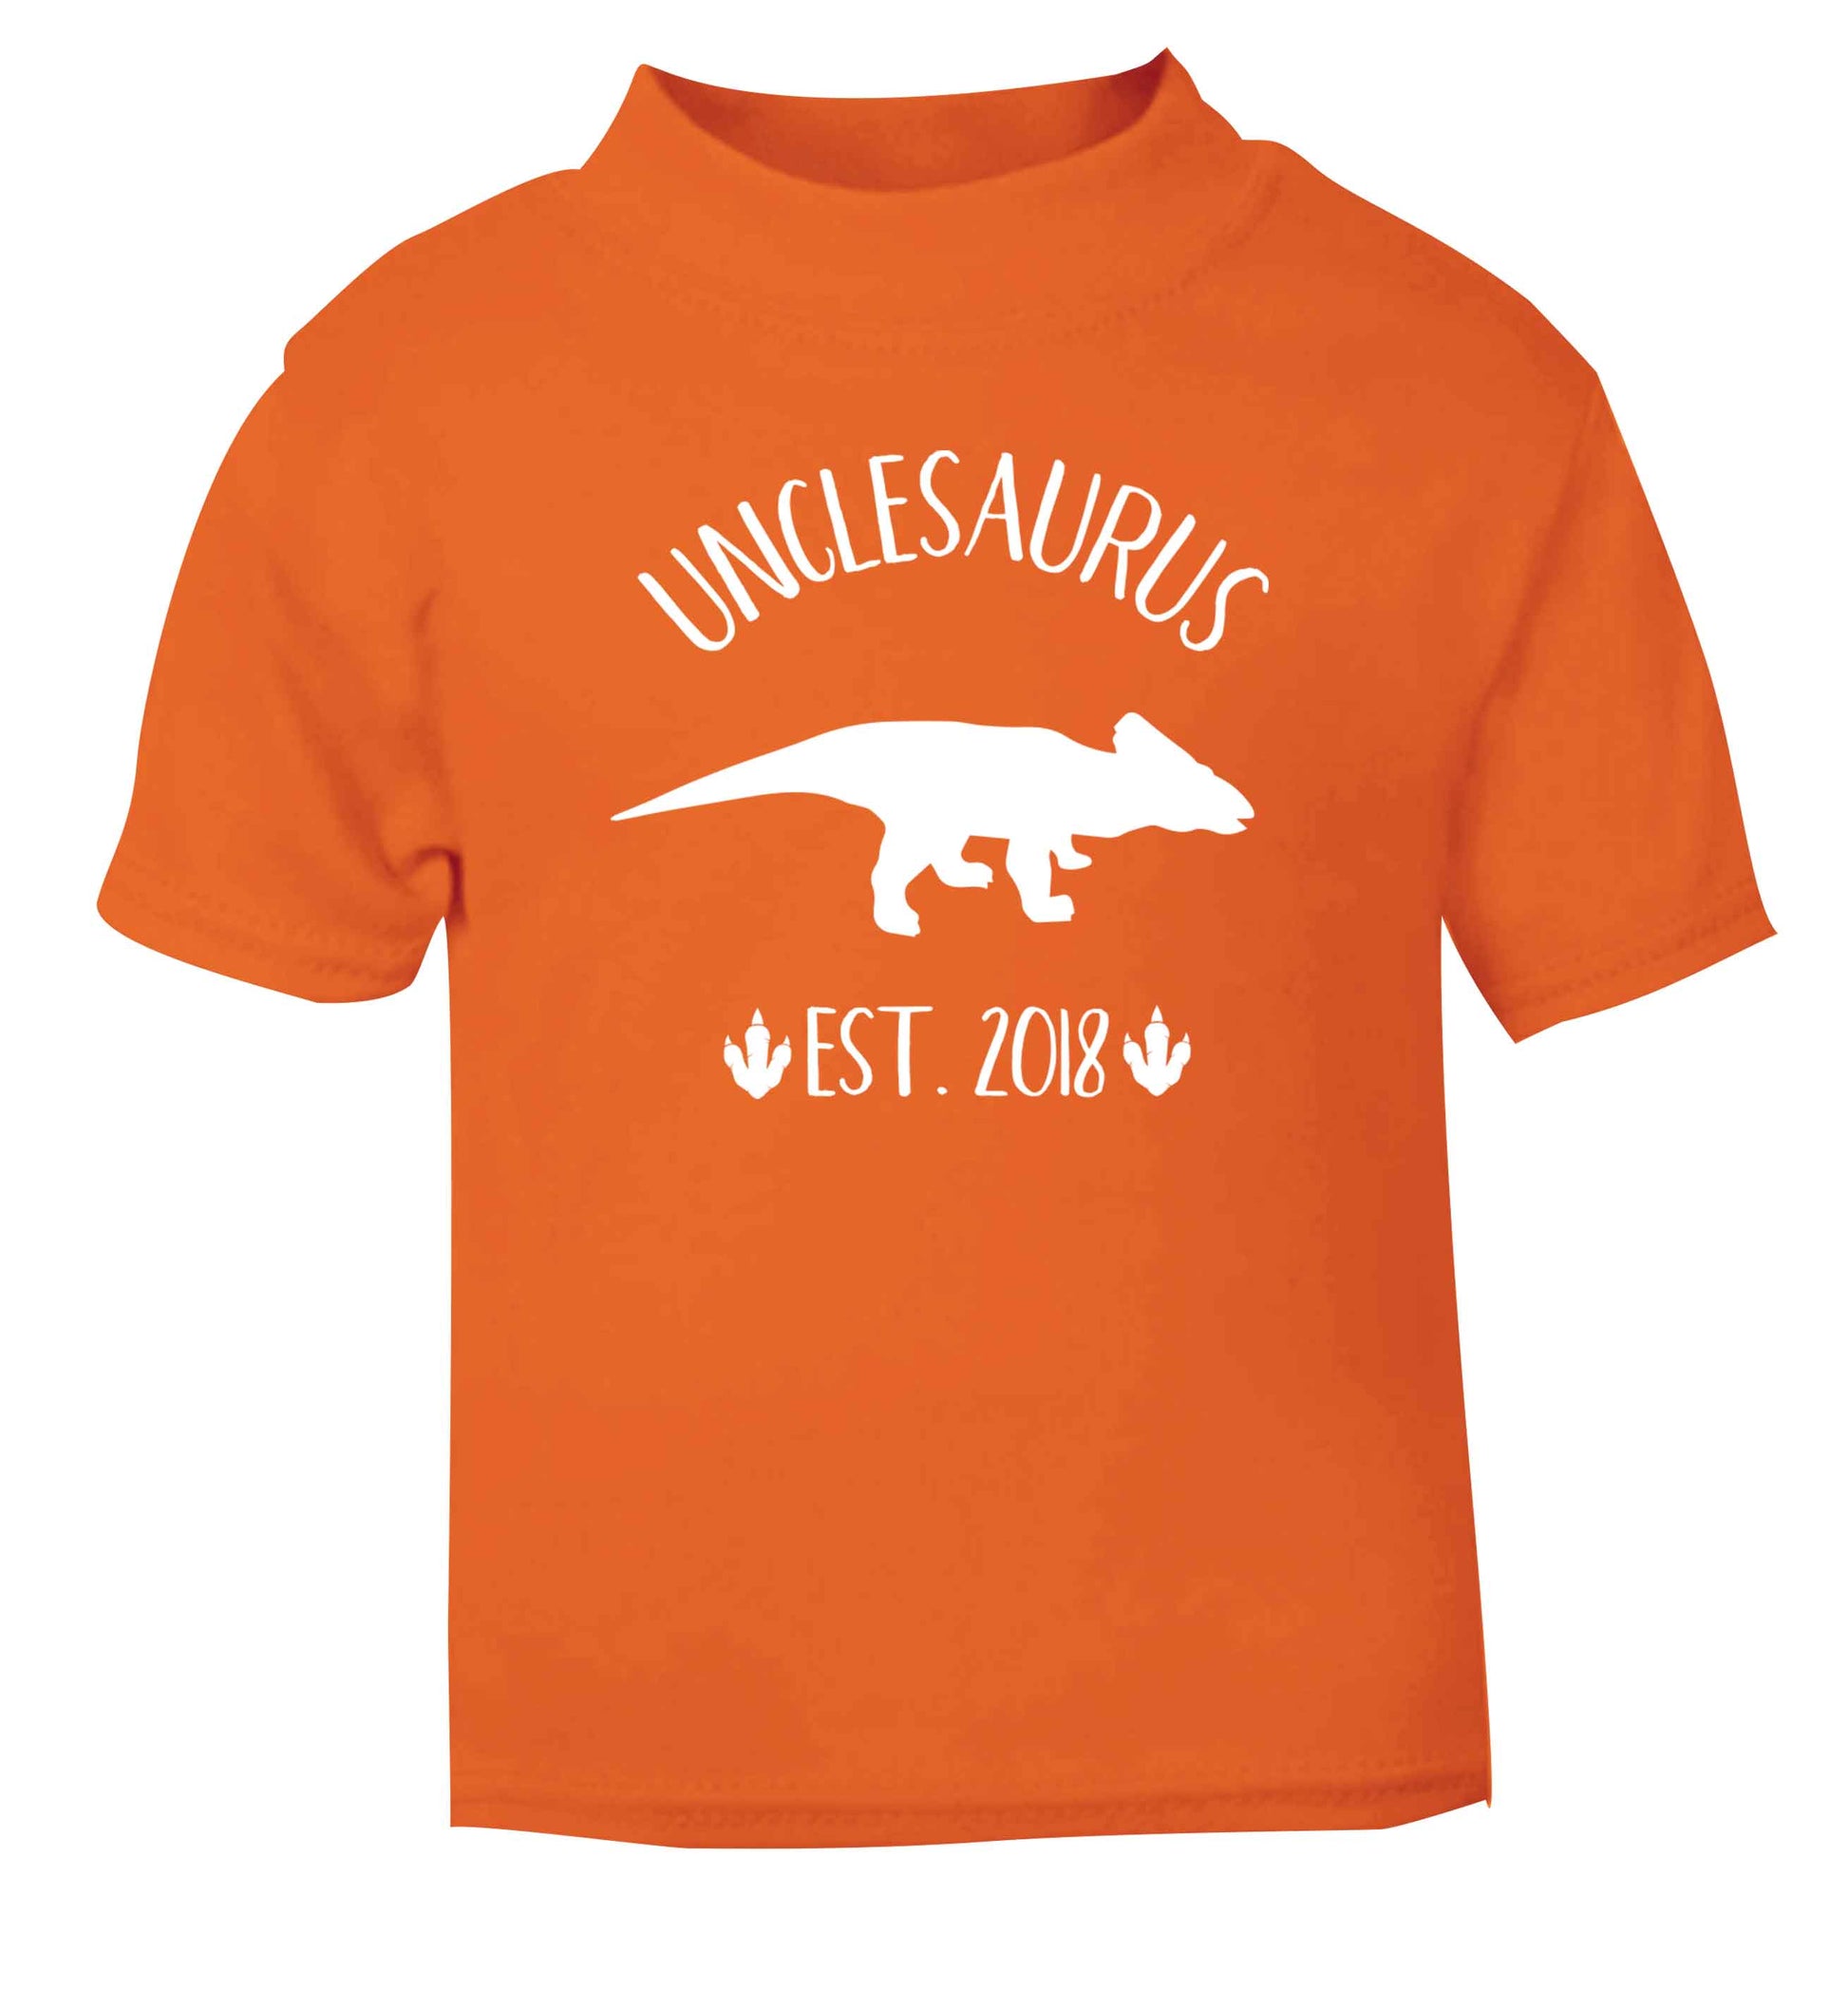 Personalised unclesaurus since (custom date) orange Baby Toddler Tshirt 2 Years